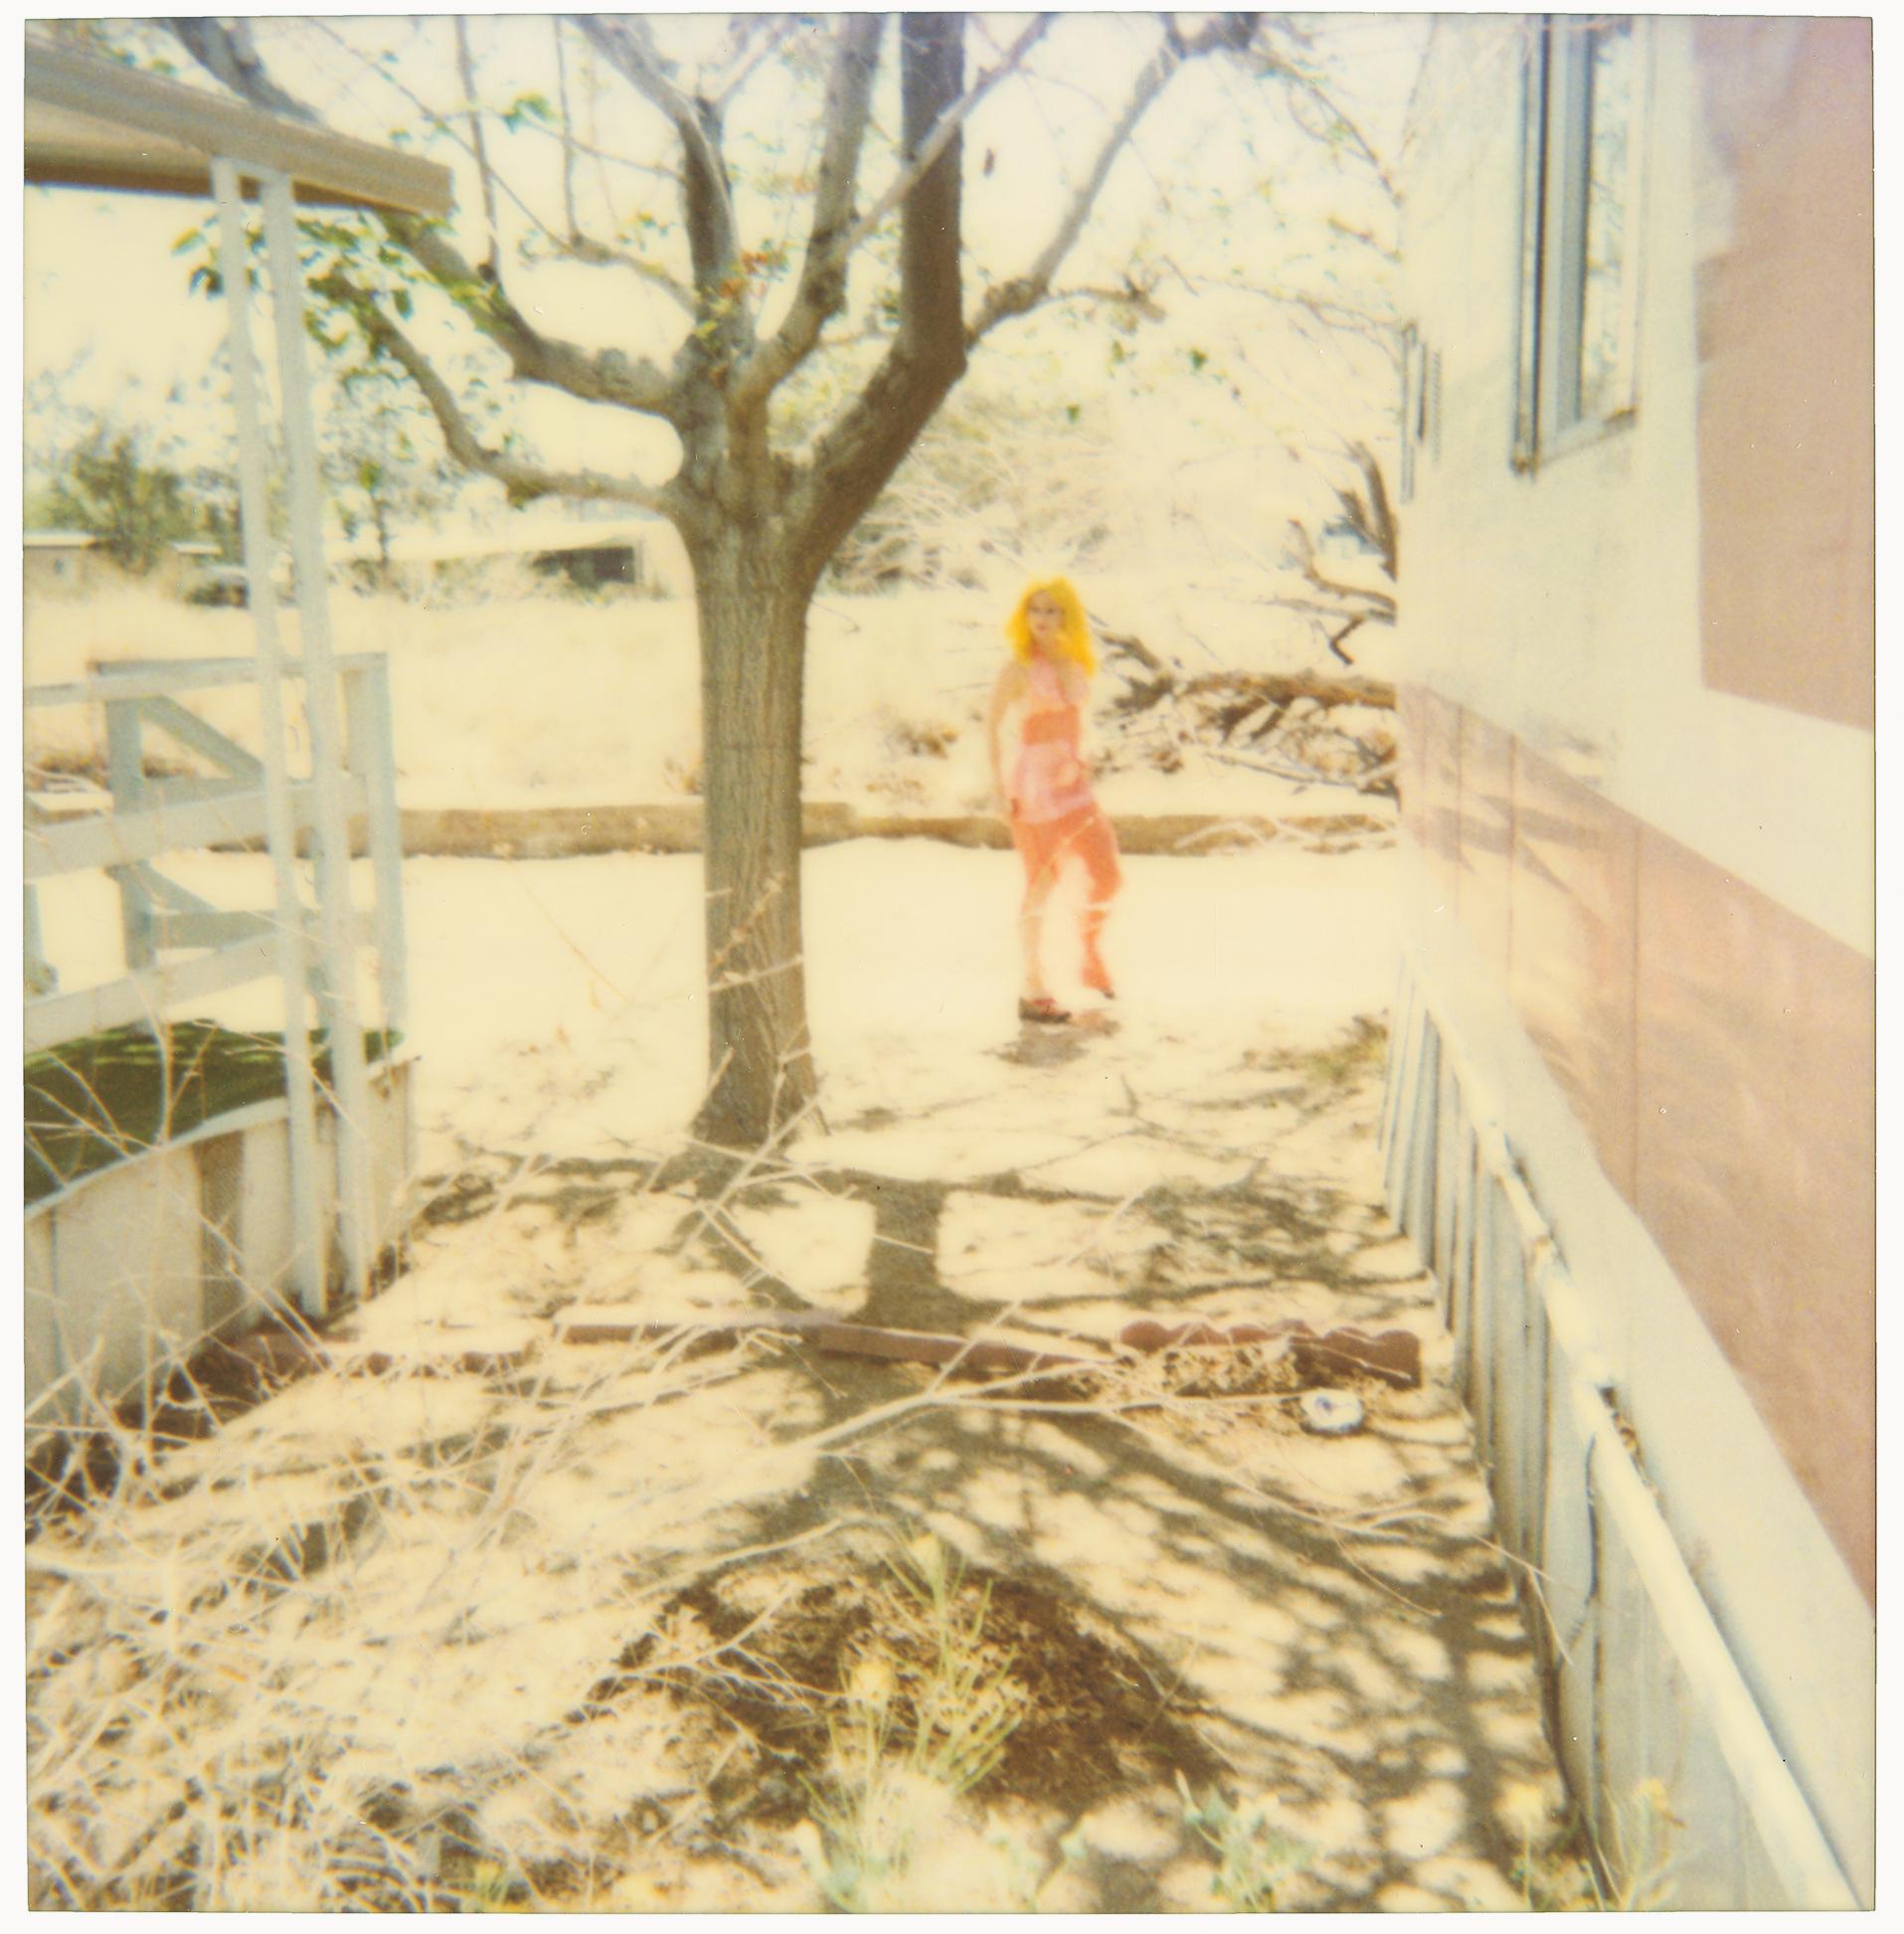 Radha und Max an Dirt Road (29 Palms, CA) – analog, Polaroid, zeitgenössisch (Zeitgenössisch), Photograph, von Stefanie Schneider